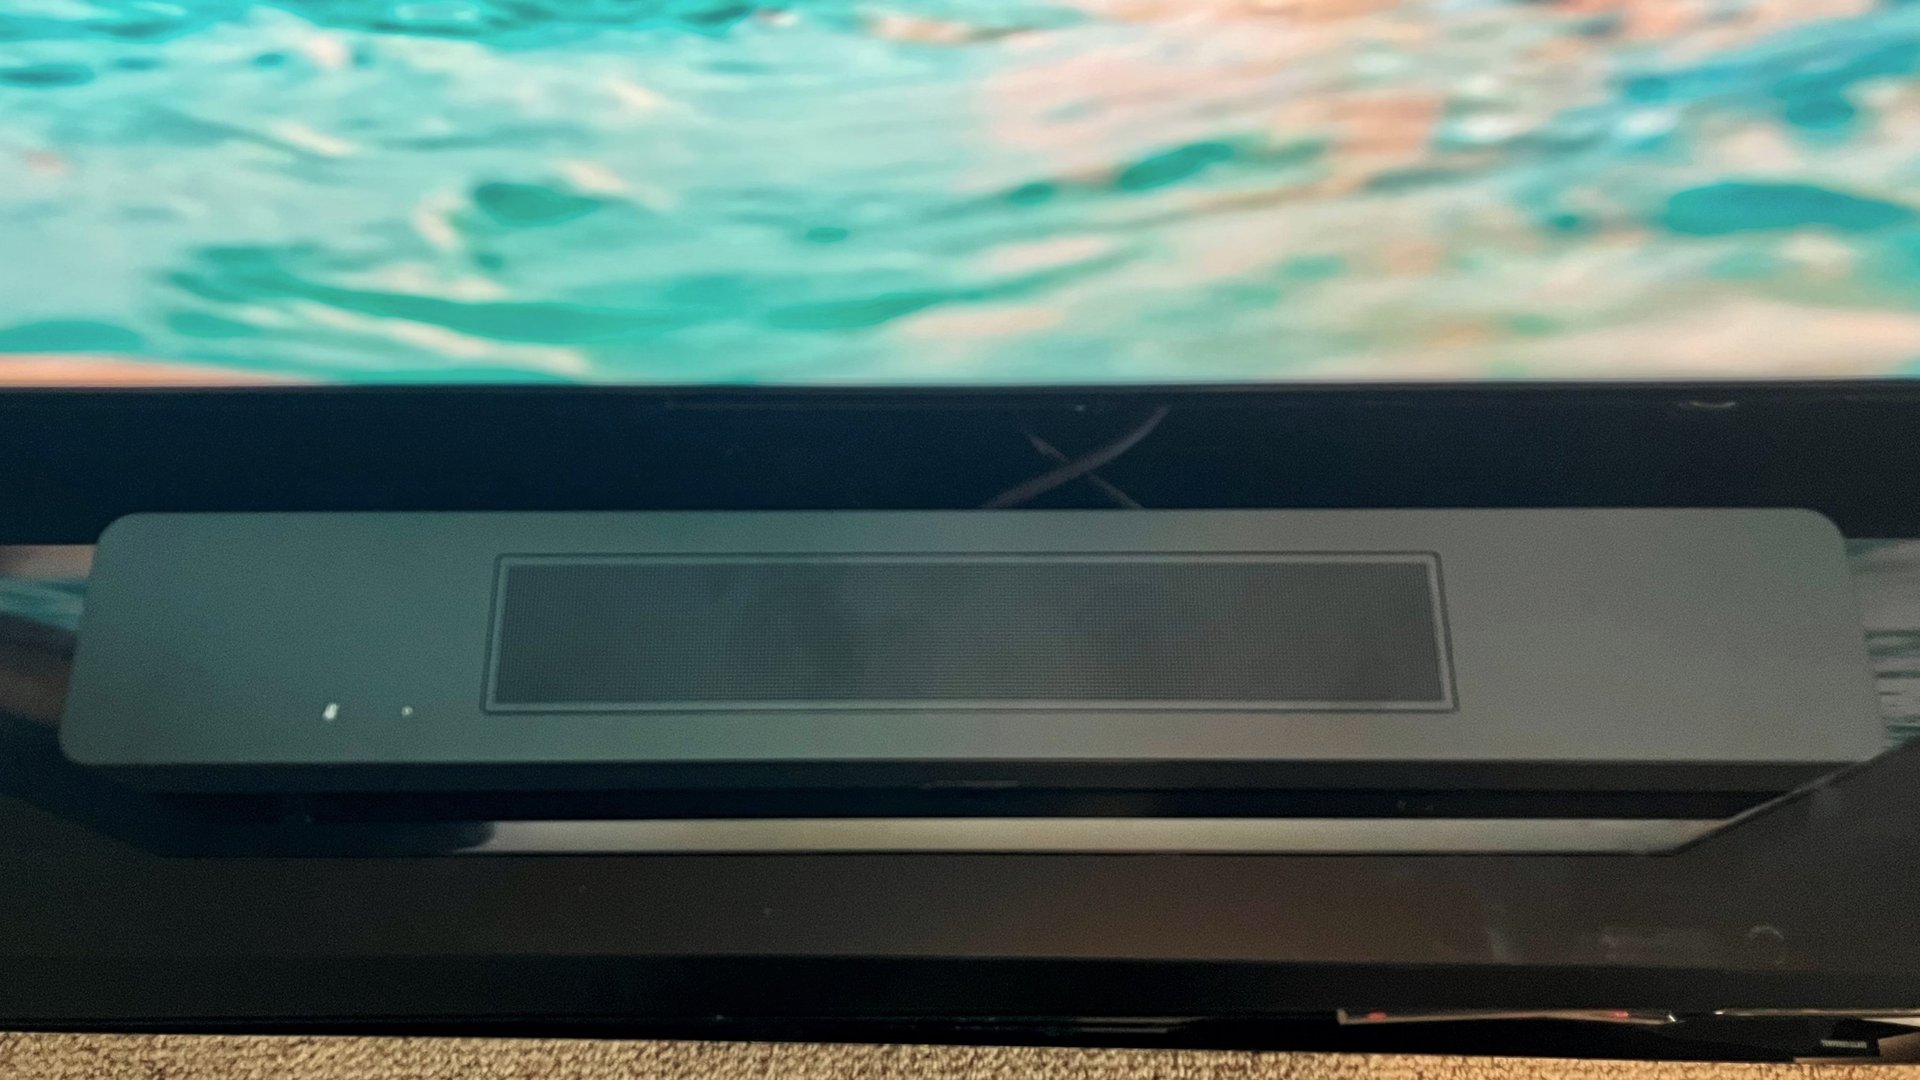 Bose Soundbar 600 na stojaku telewizyjnym z niebieskim ekranem w tle